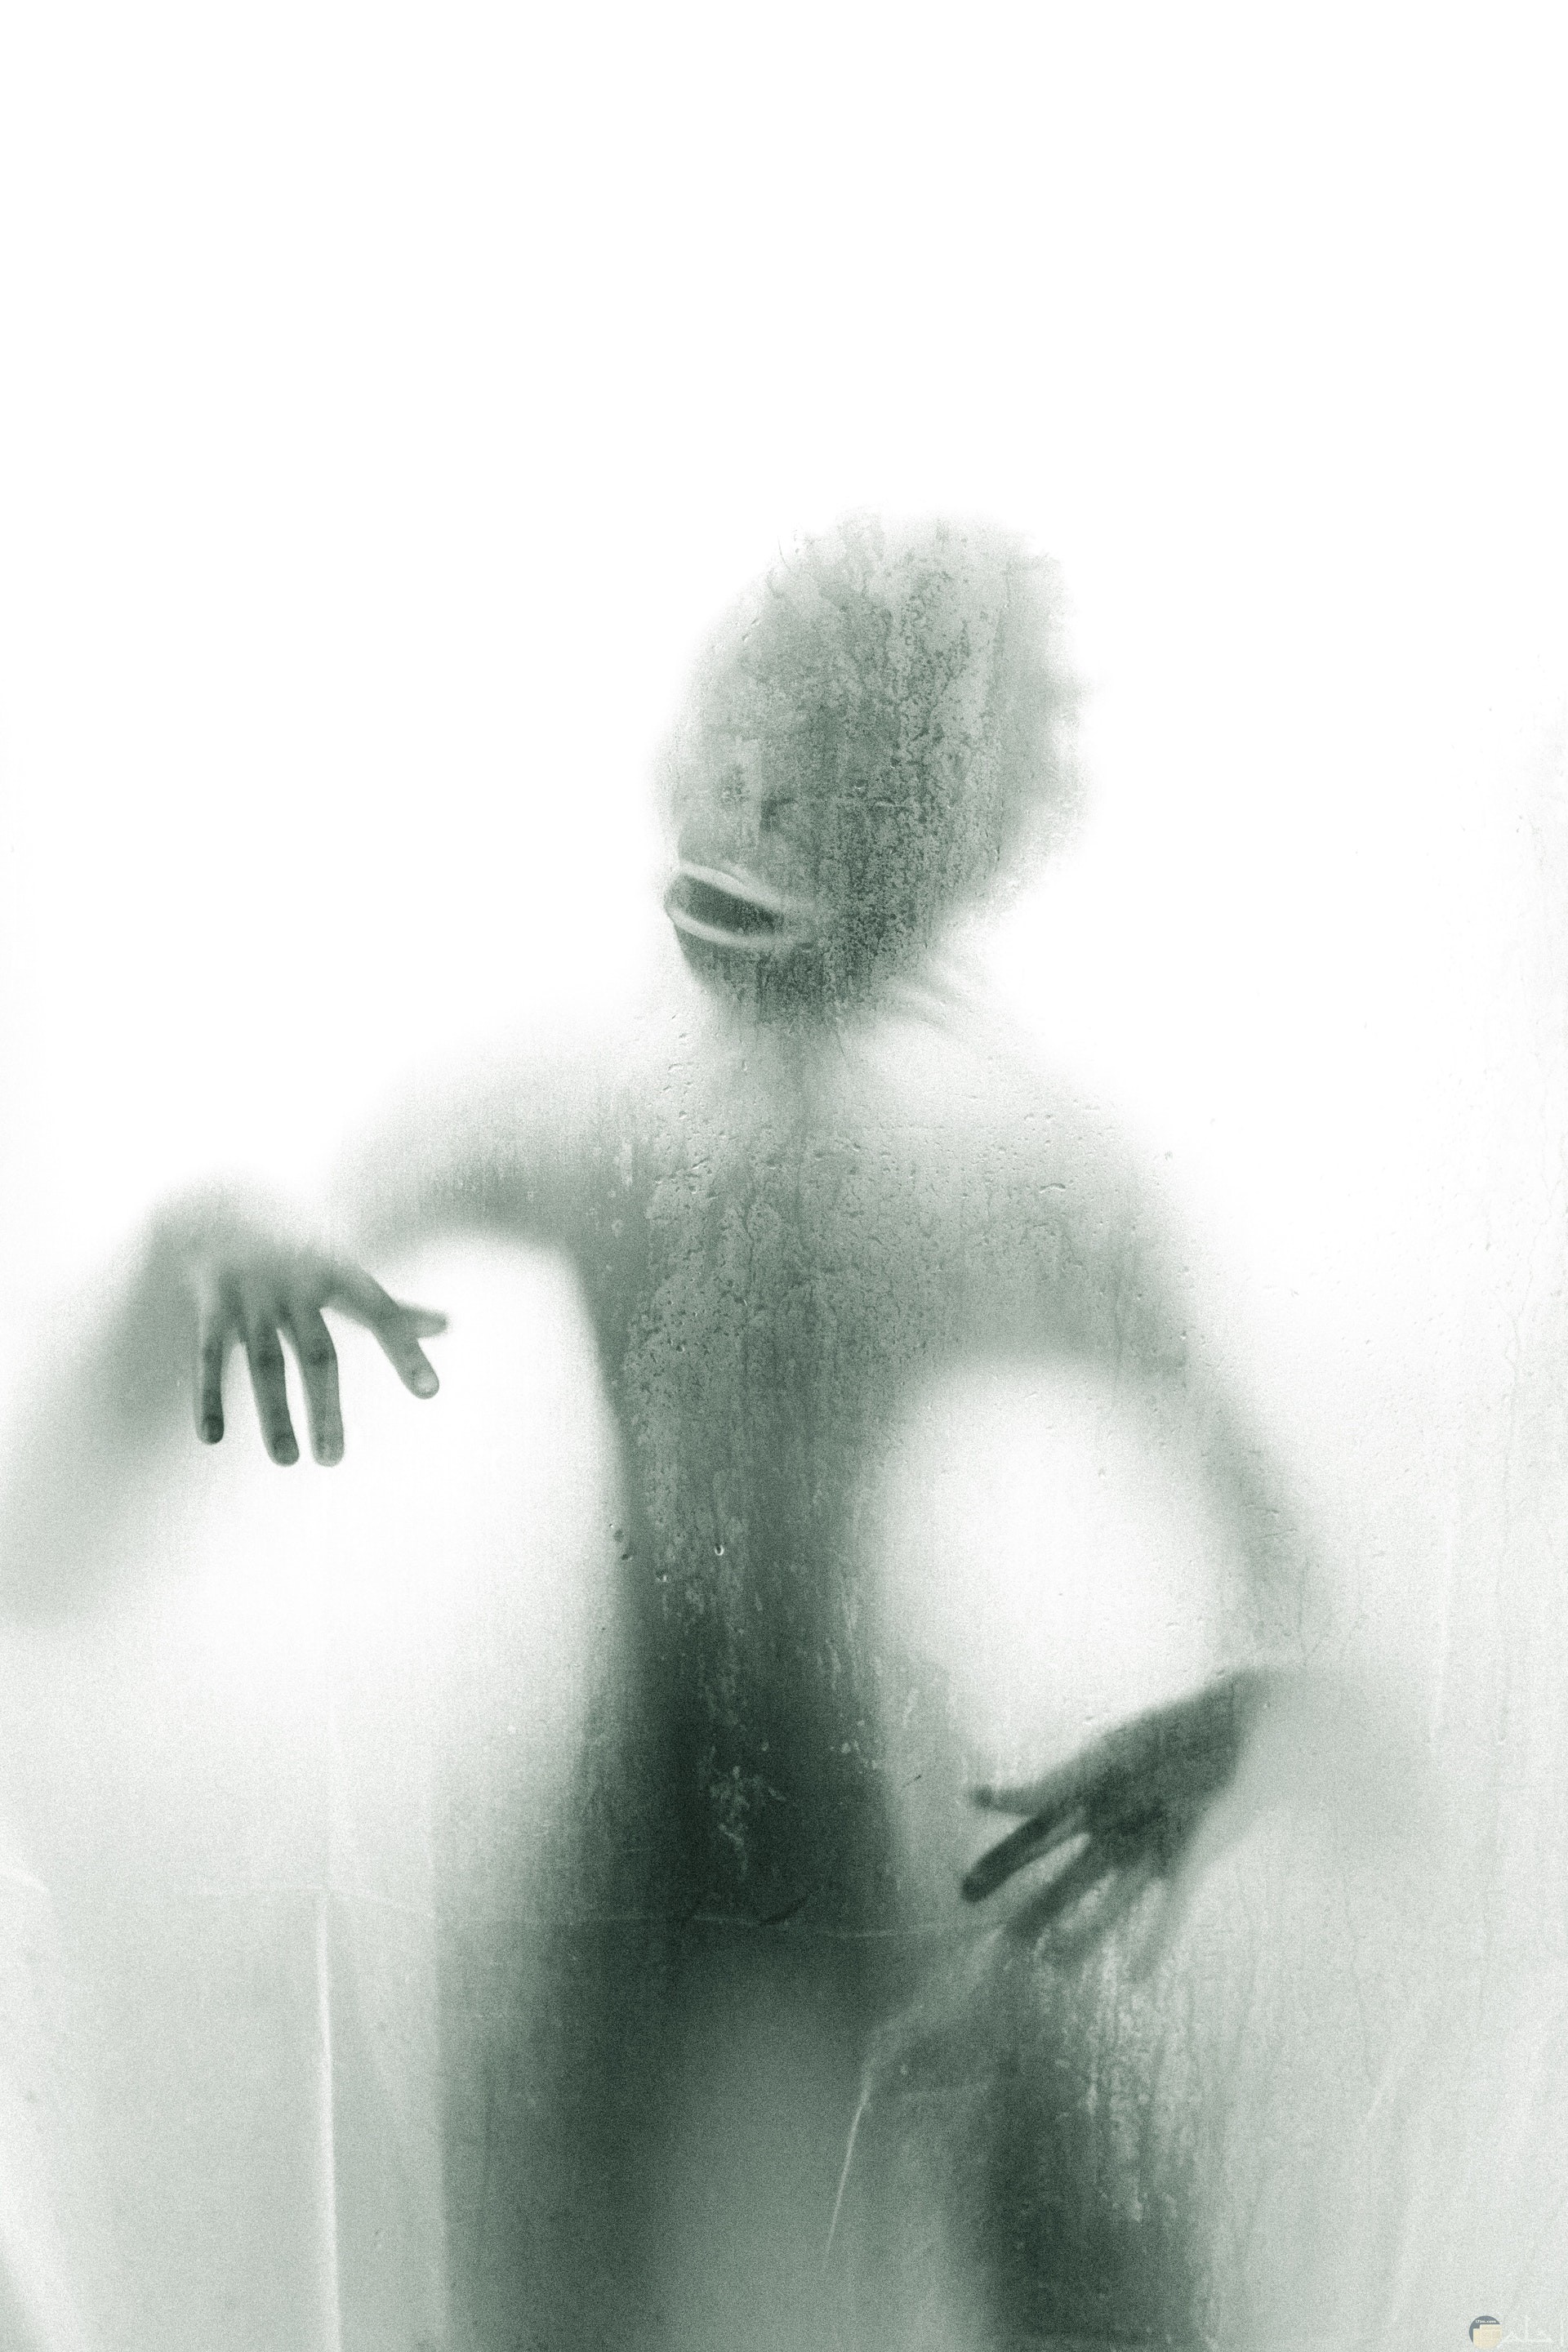 صورة مرعبة ومخيفة لكائن غريب خلف باب شبه شفاف 